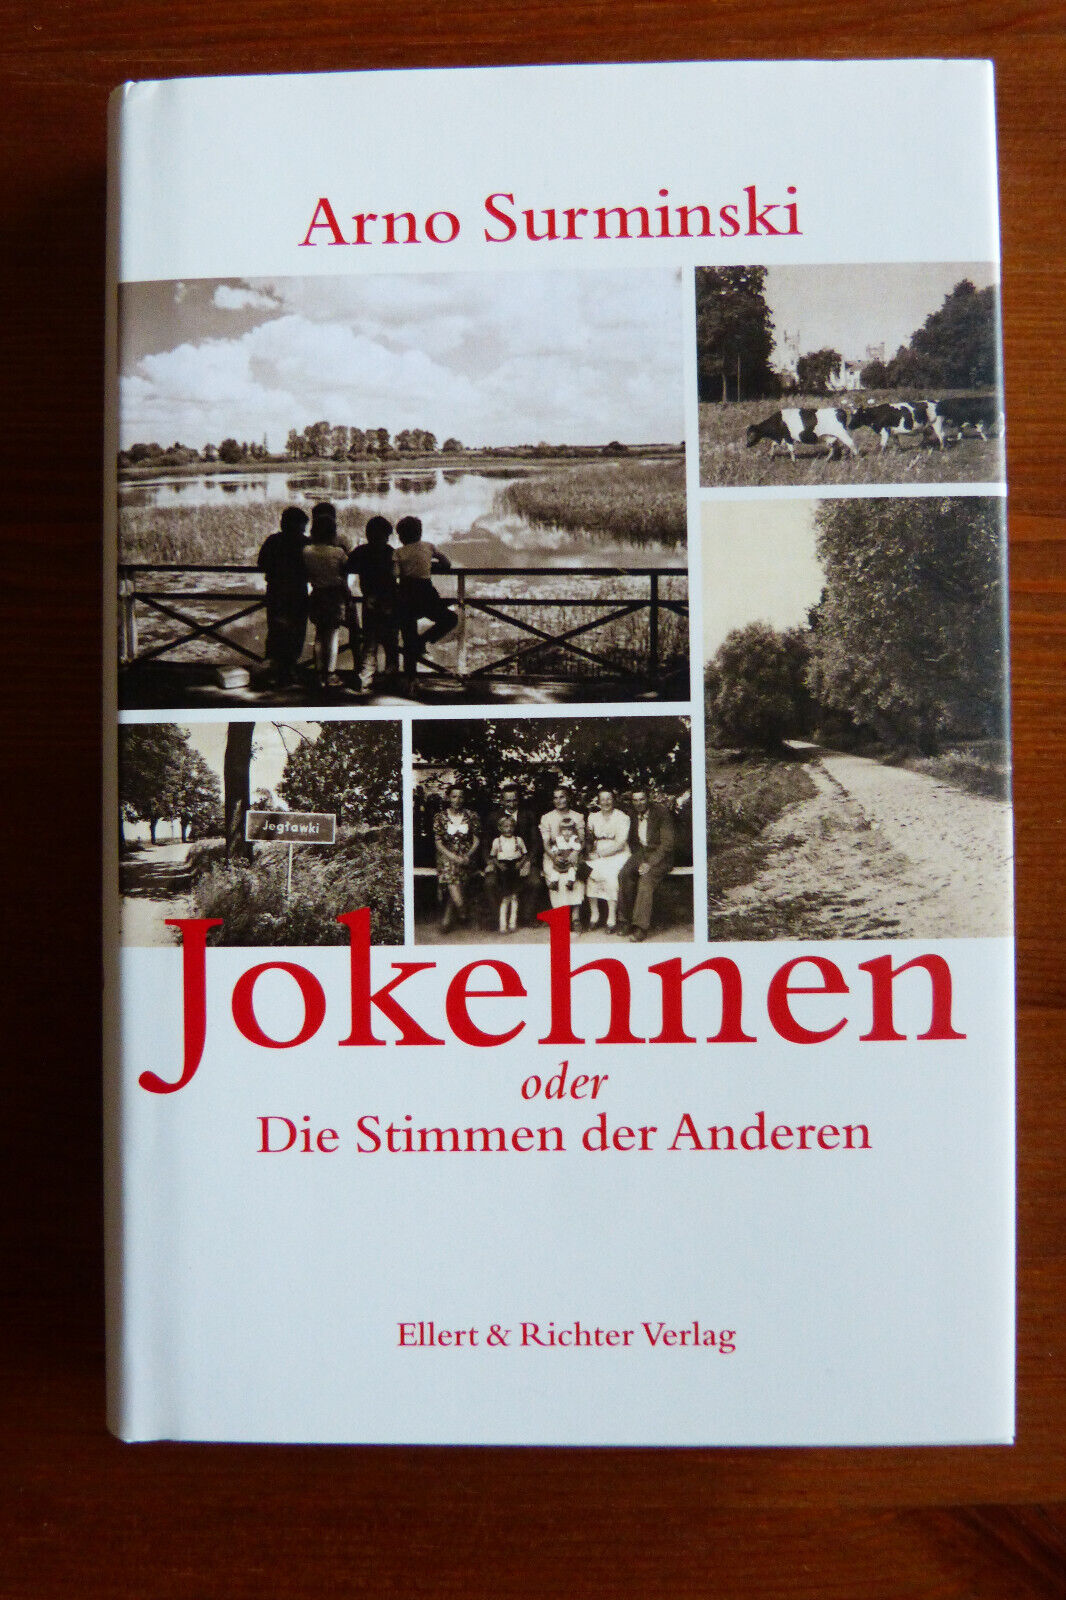 Jokehnen - Buch - Arno Surminski - Ellert & Richter - Ostpreußen - Flucht - Arno Surminski